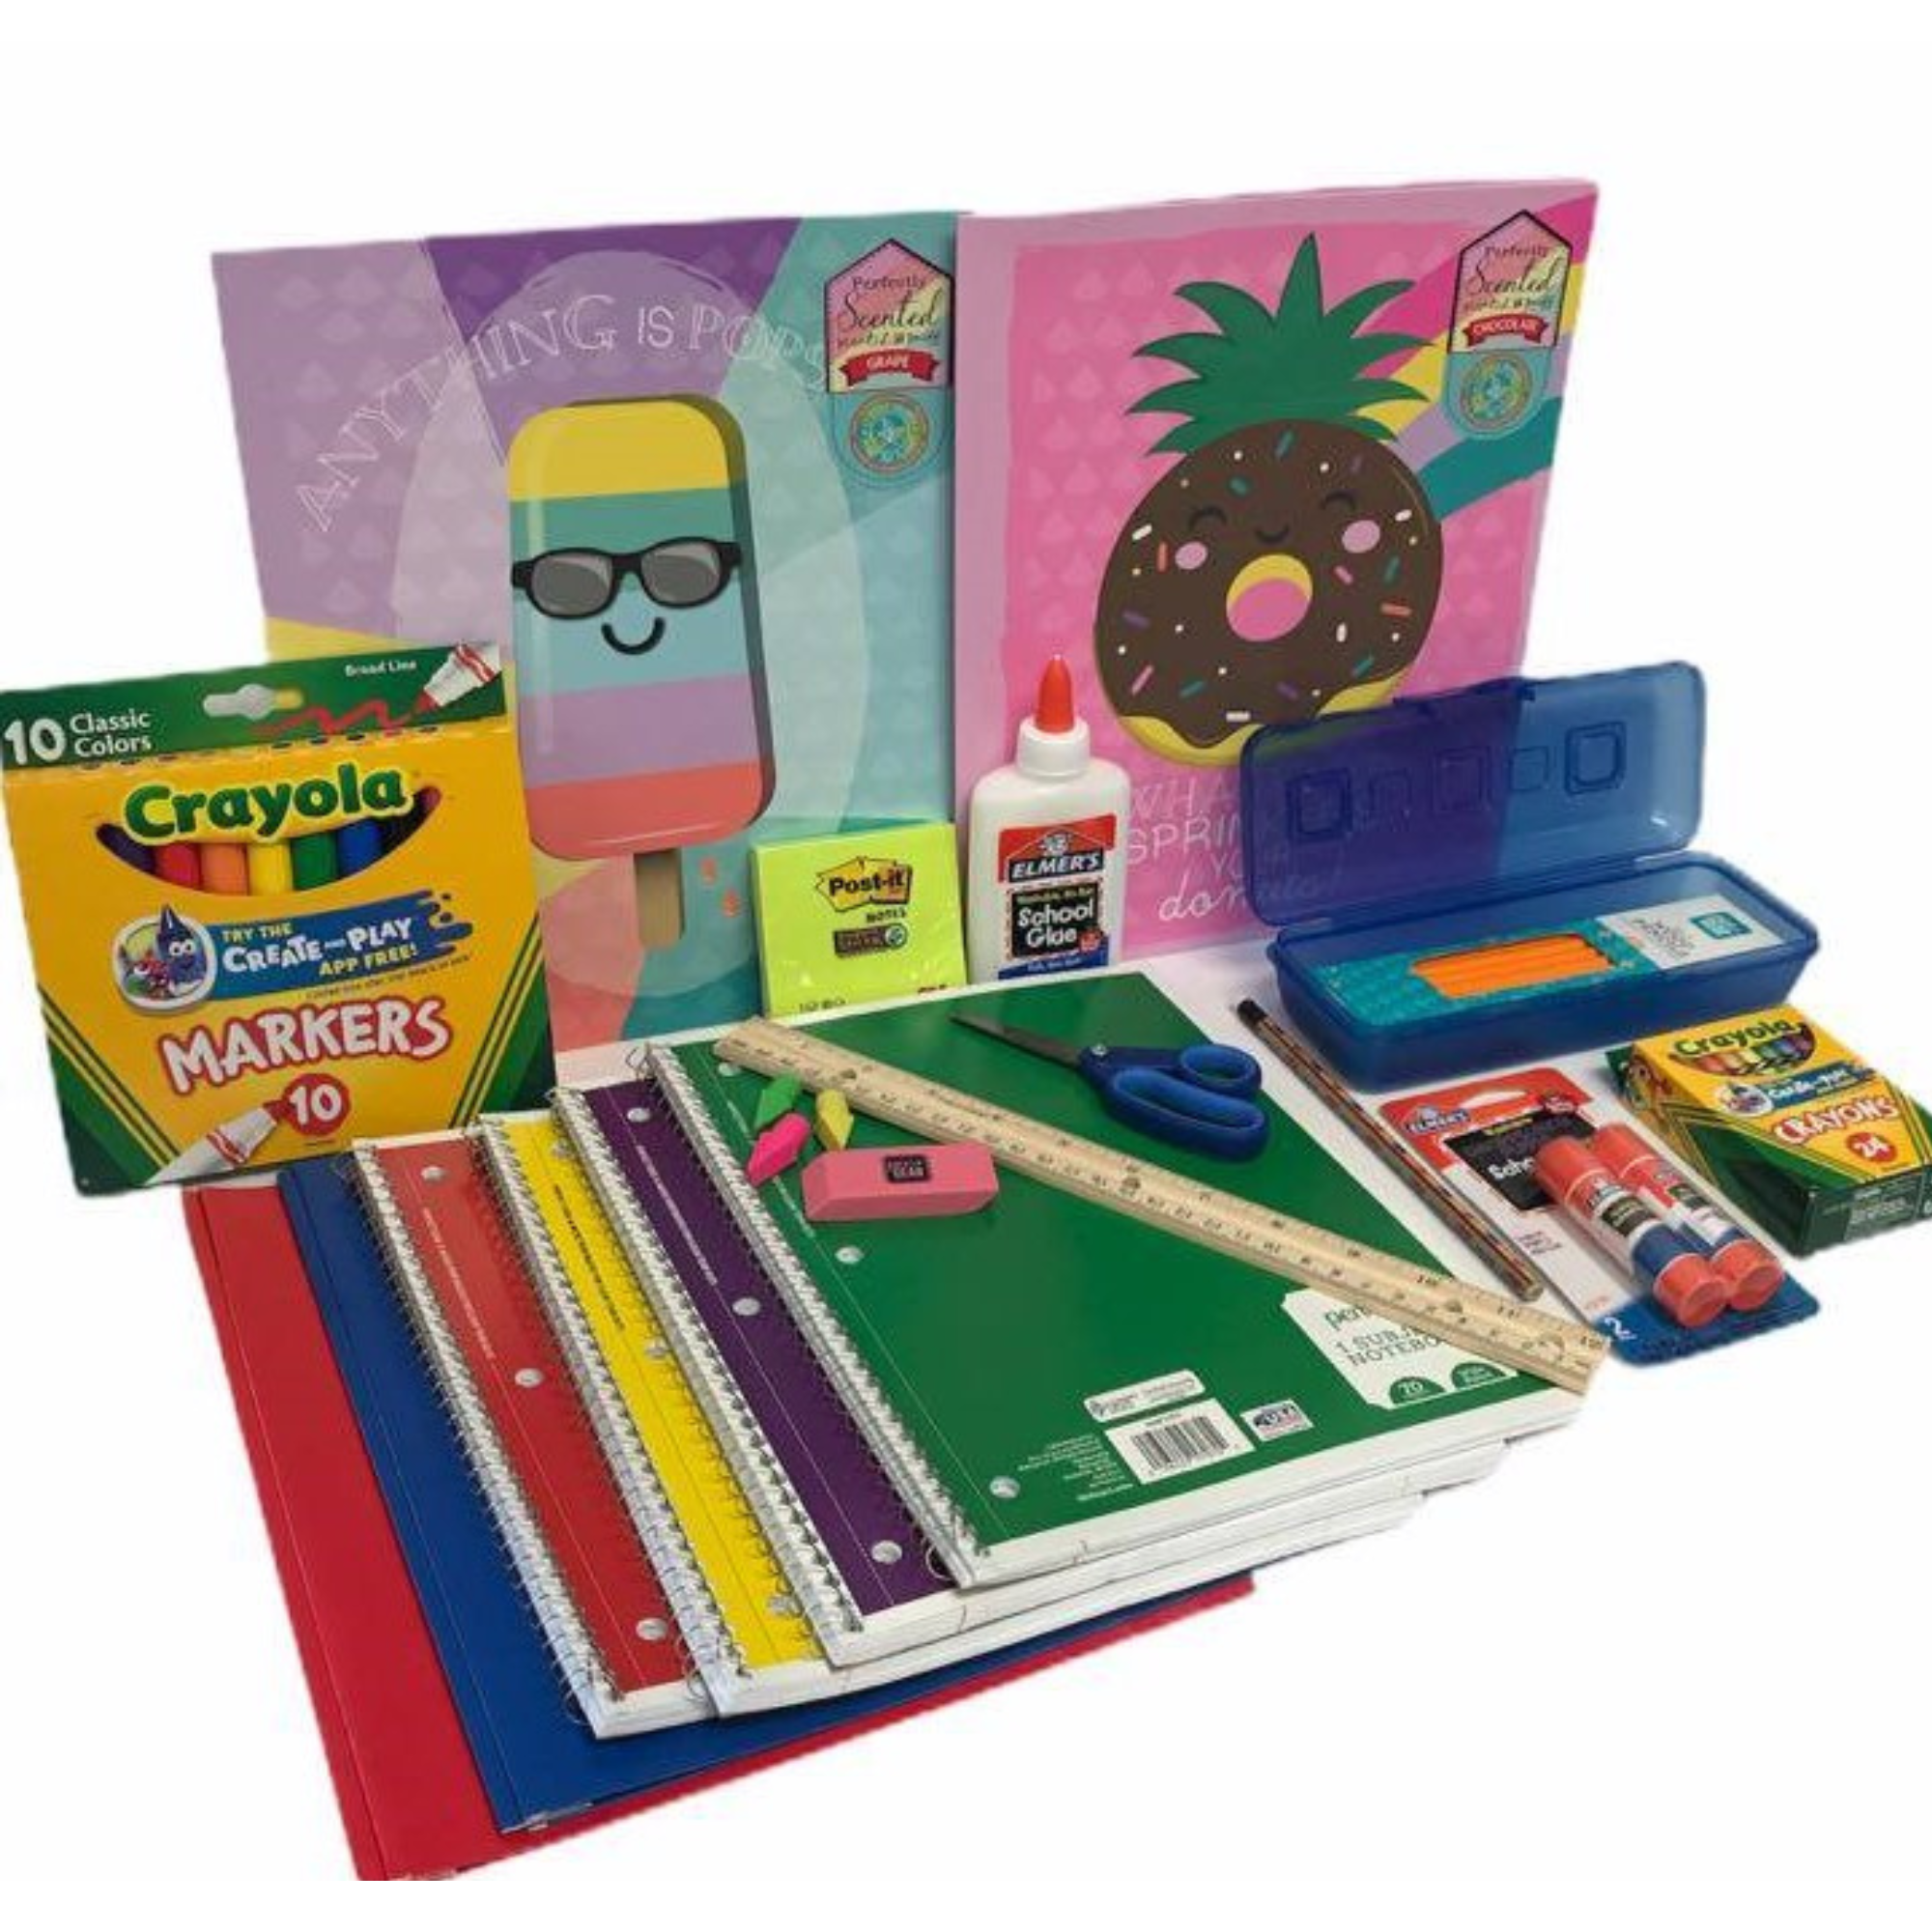 Elementary School Essentials Supplies Kit Bundle Grades 1-4